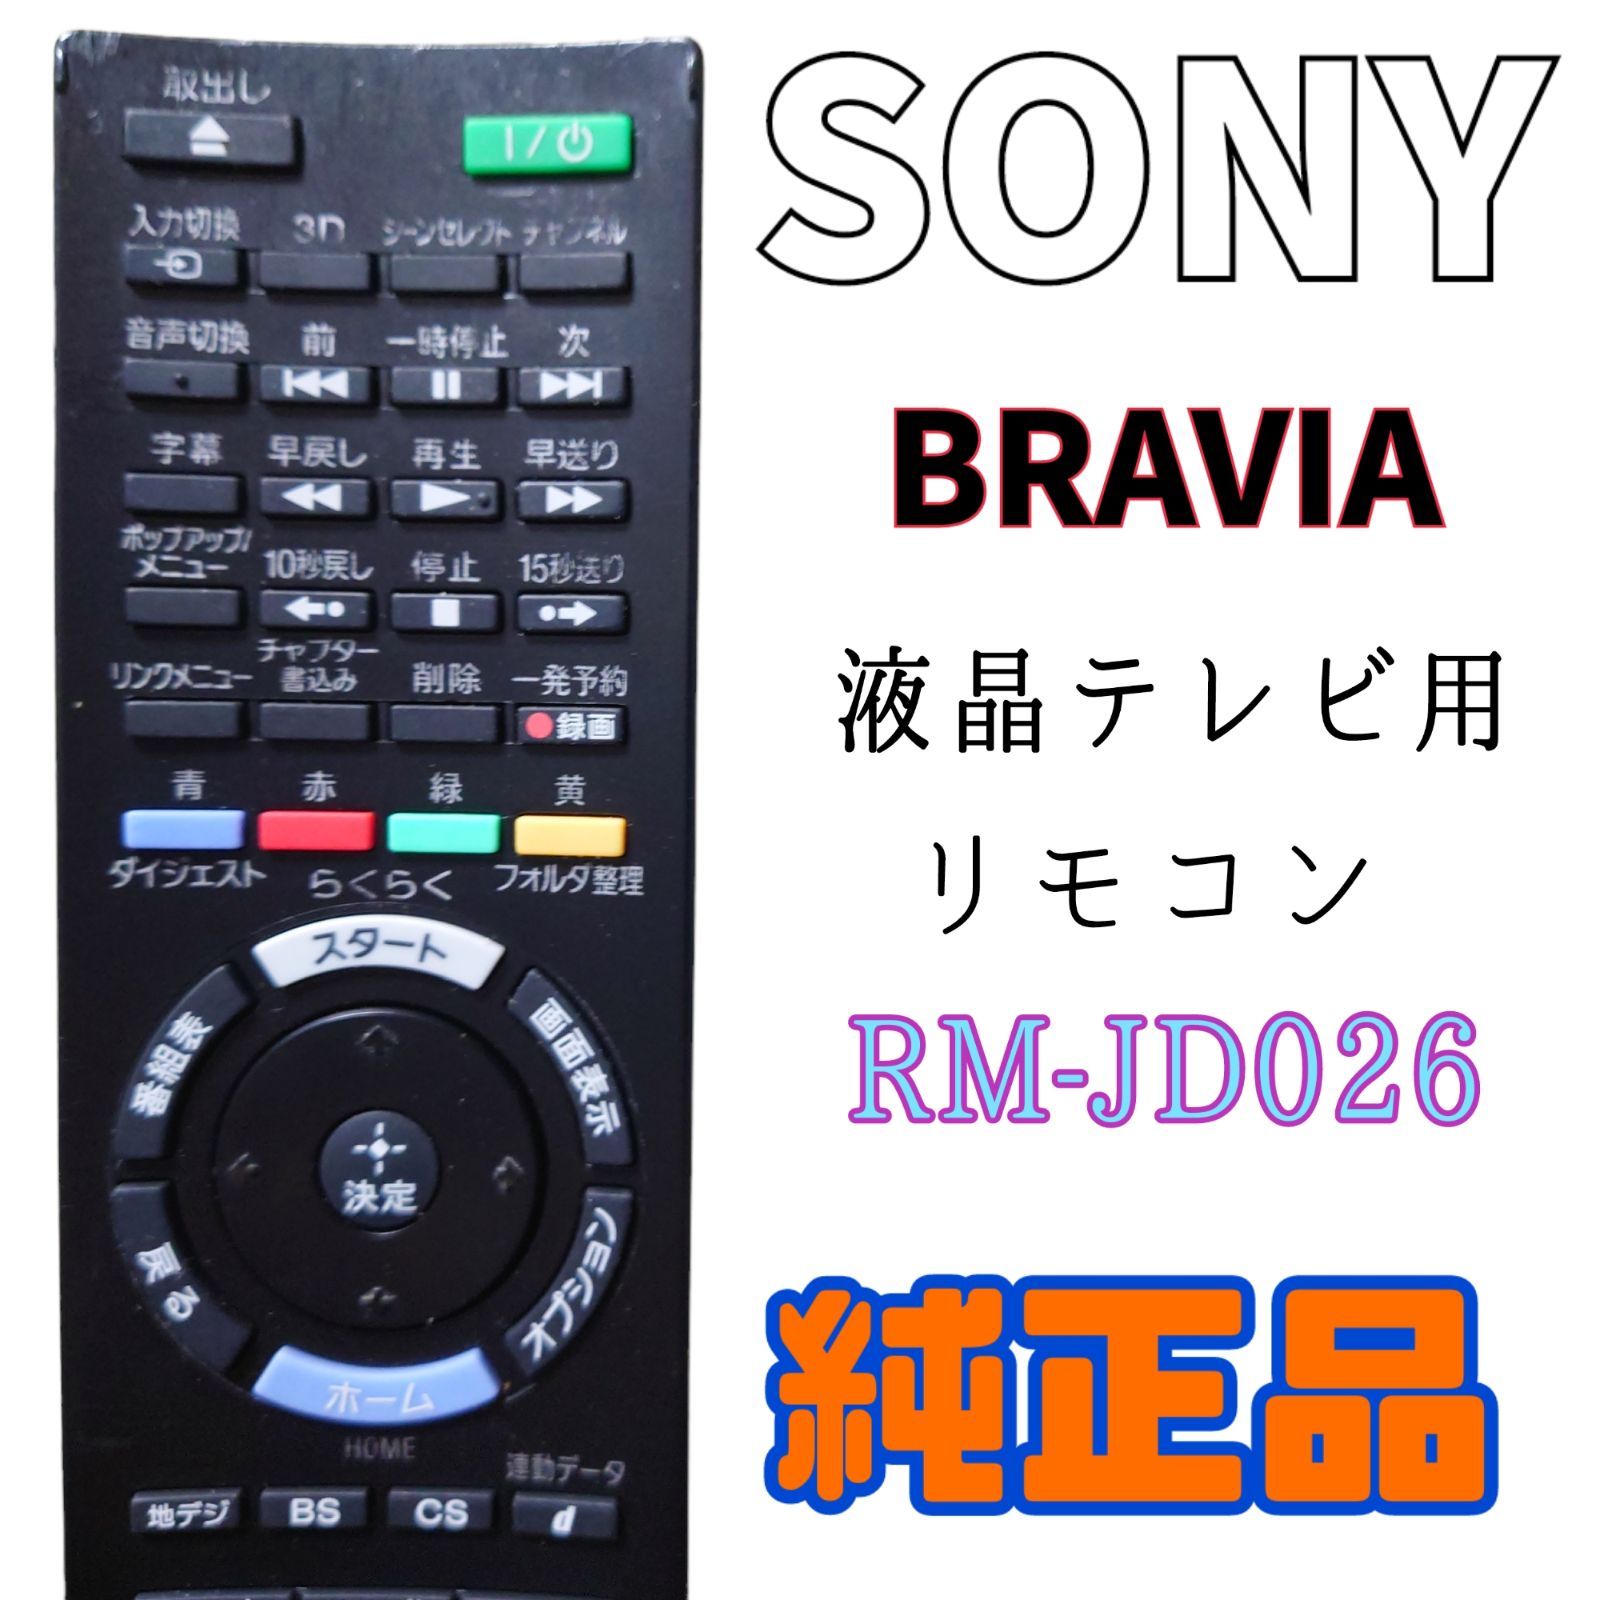 保証ありSONY ソニー 純正テレビリモコン RM-JD027 リモコン